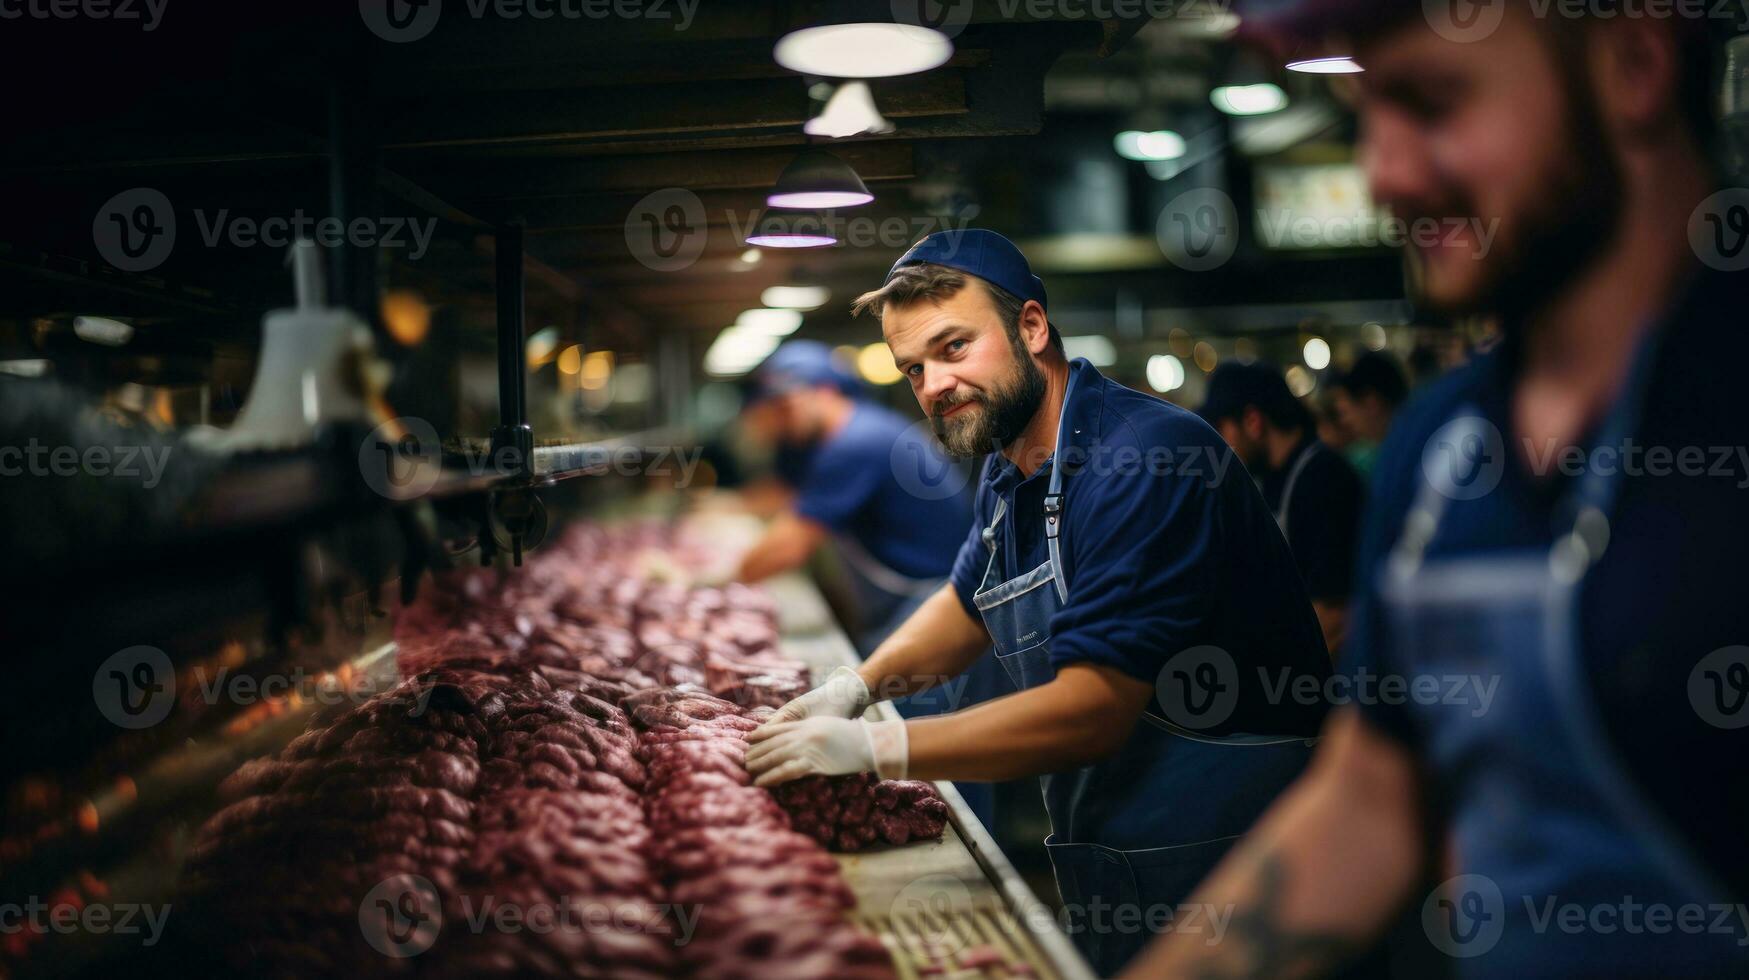 mannetje arbeider werken in een vlees fabriek voor uitverkoop en verder verwerken net zo worst. foto